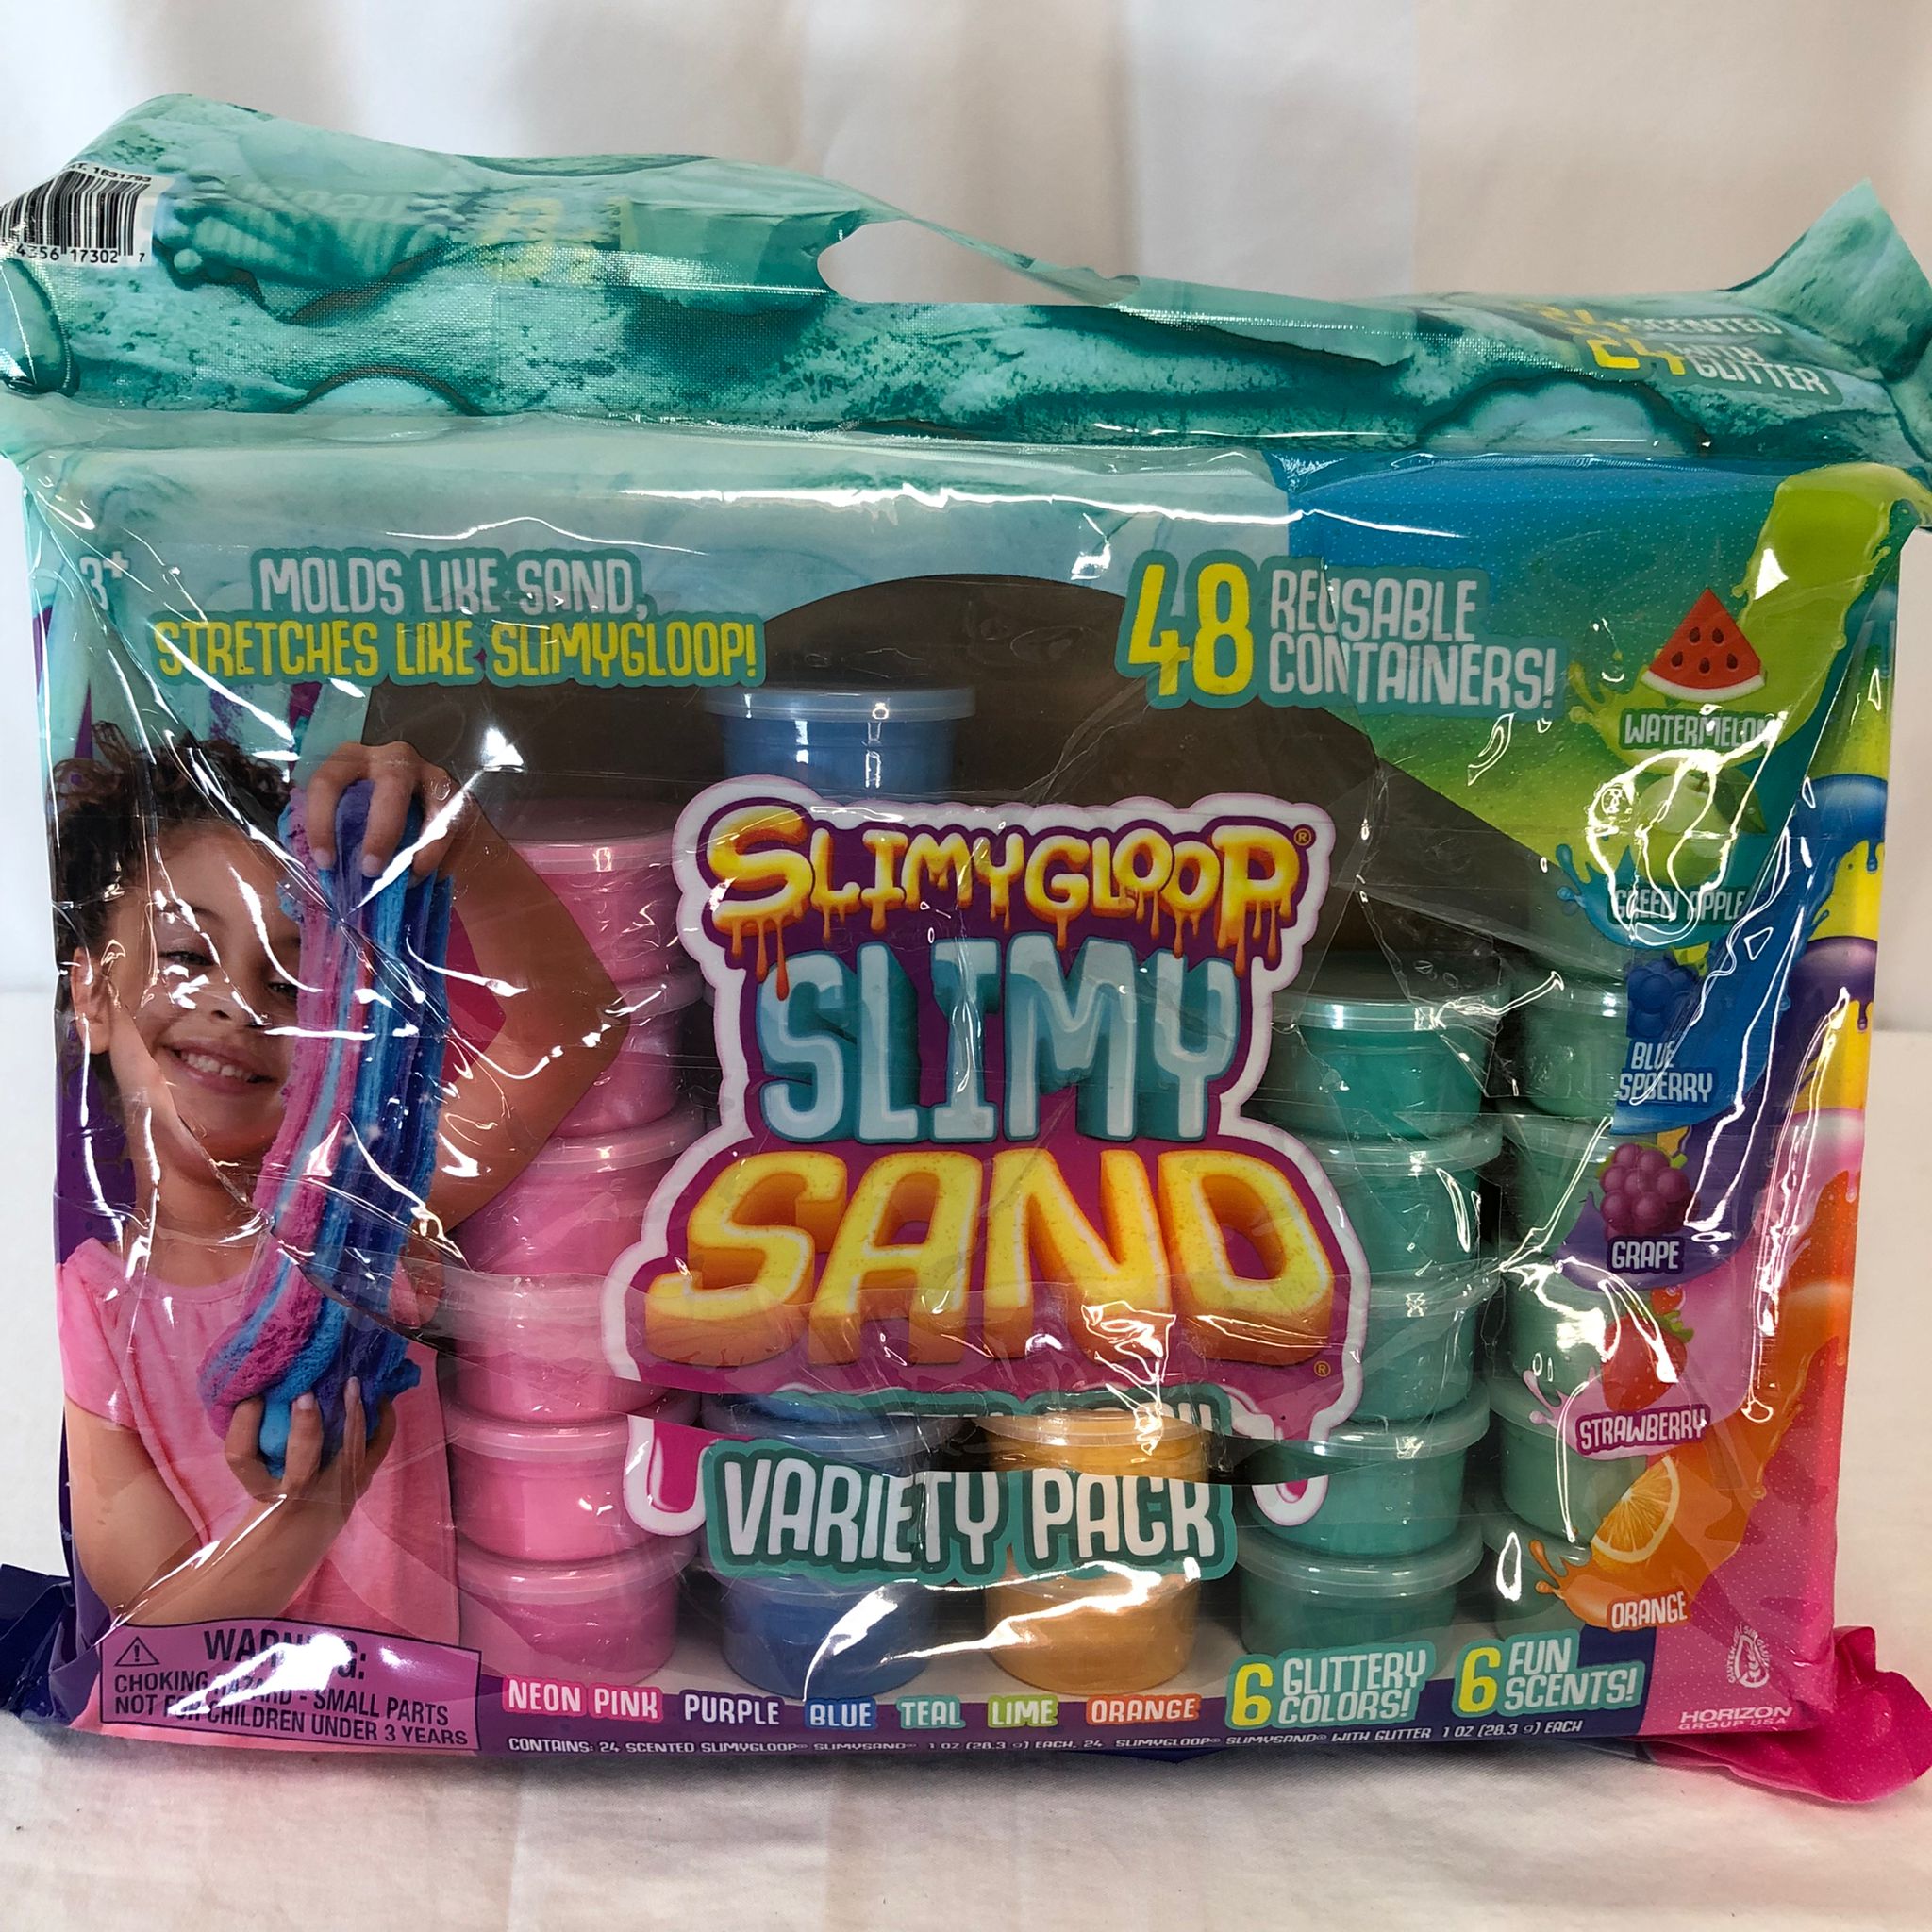 As is SlimyGloop Slimy Sand 33 Pack Variety Pack